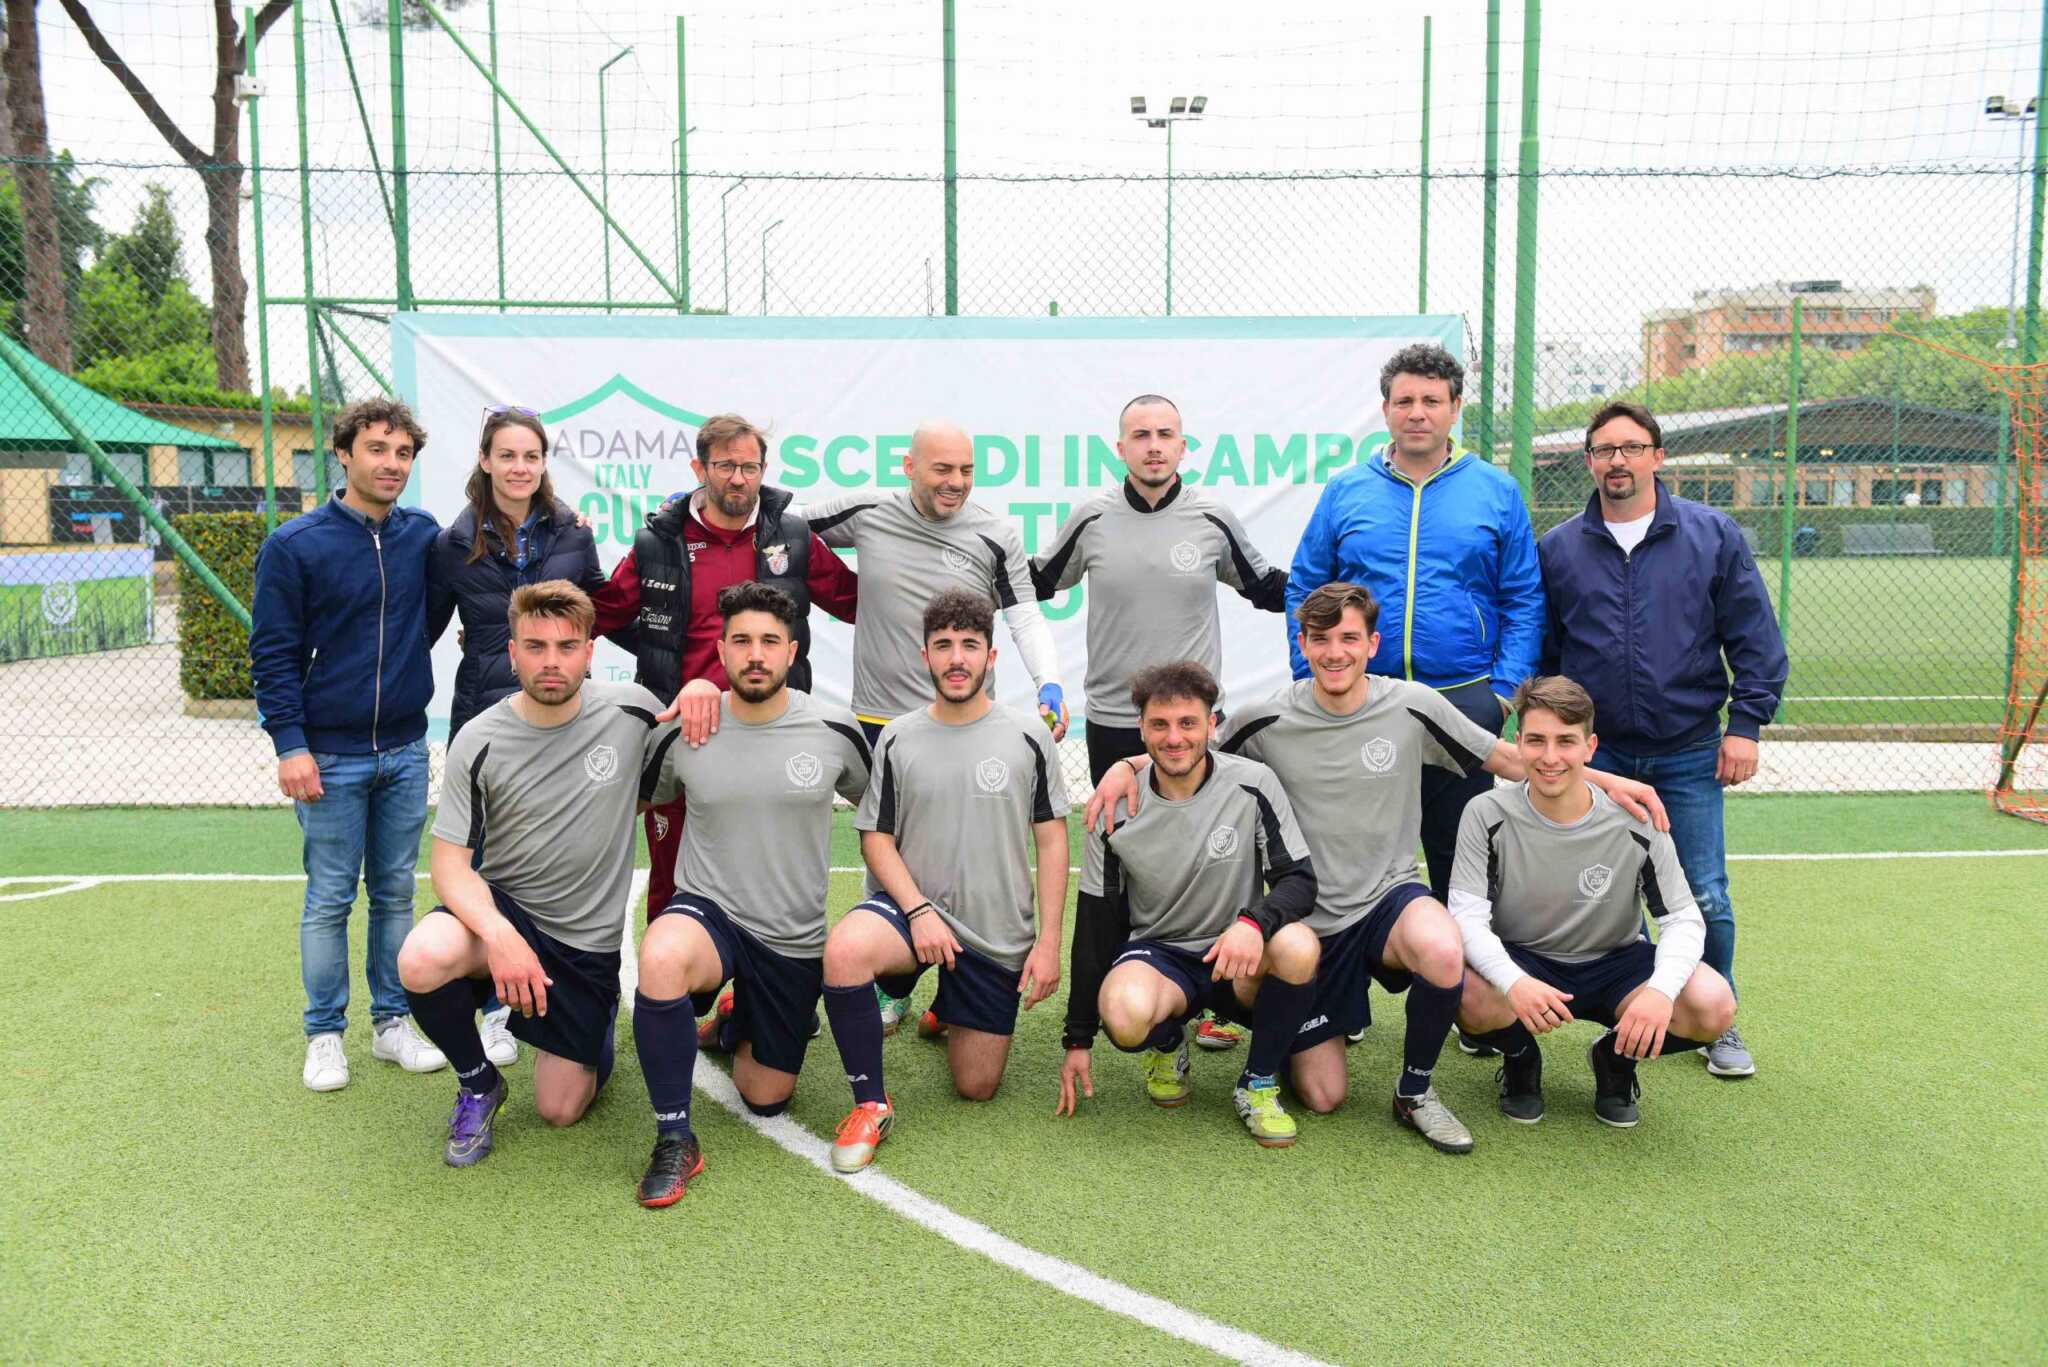 Adama Italy Cup, agricoltori in campo per sostenere il territorio: Squadra di Nola vince seconda giornata